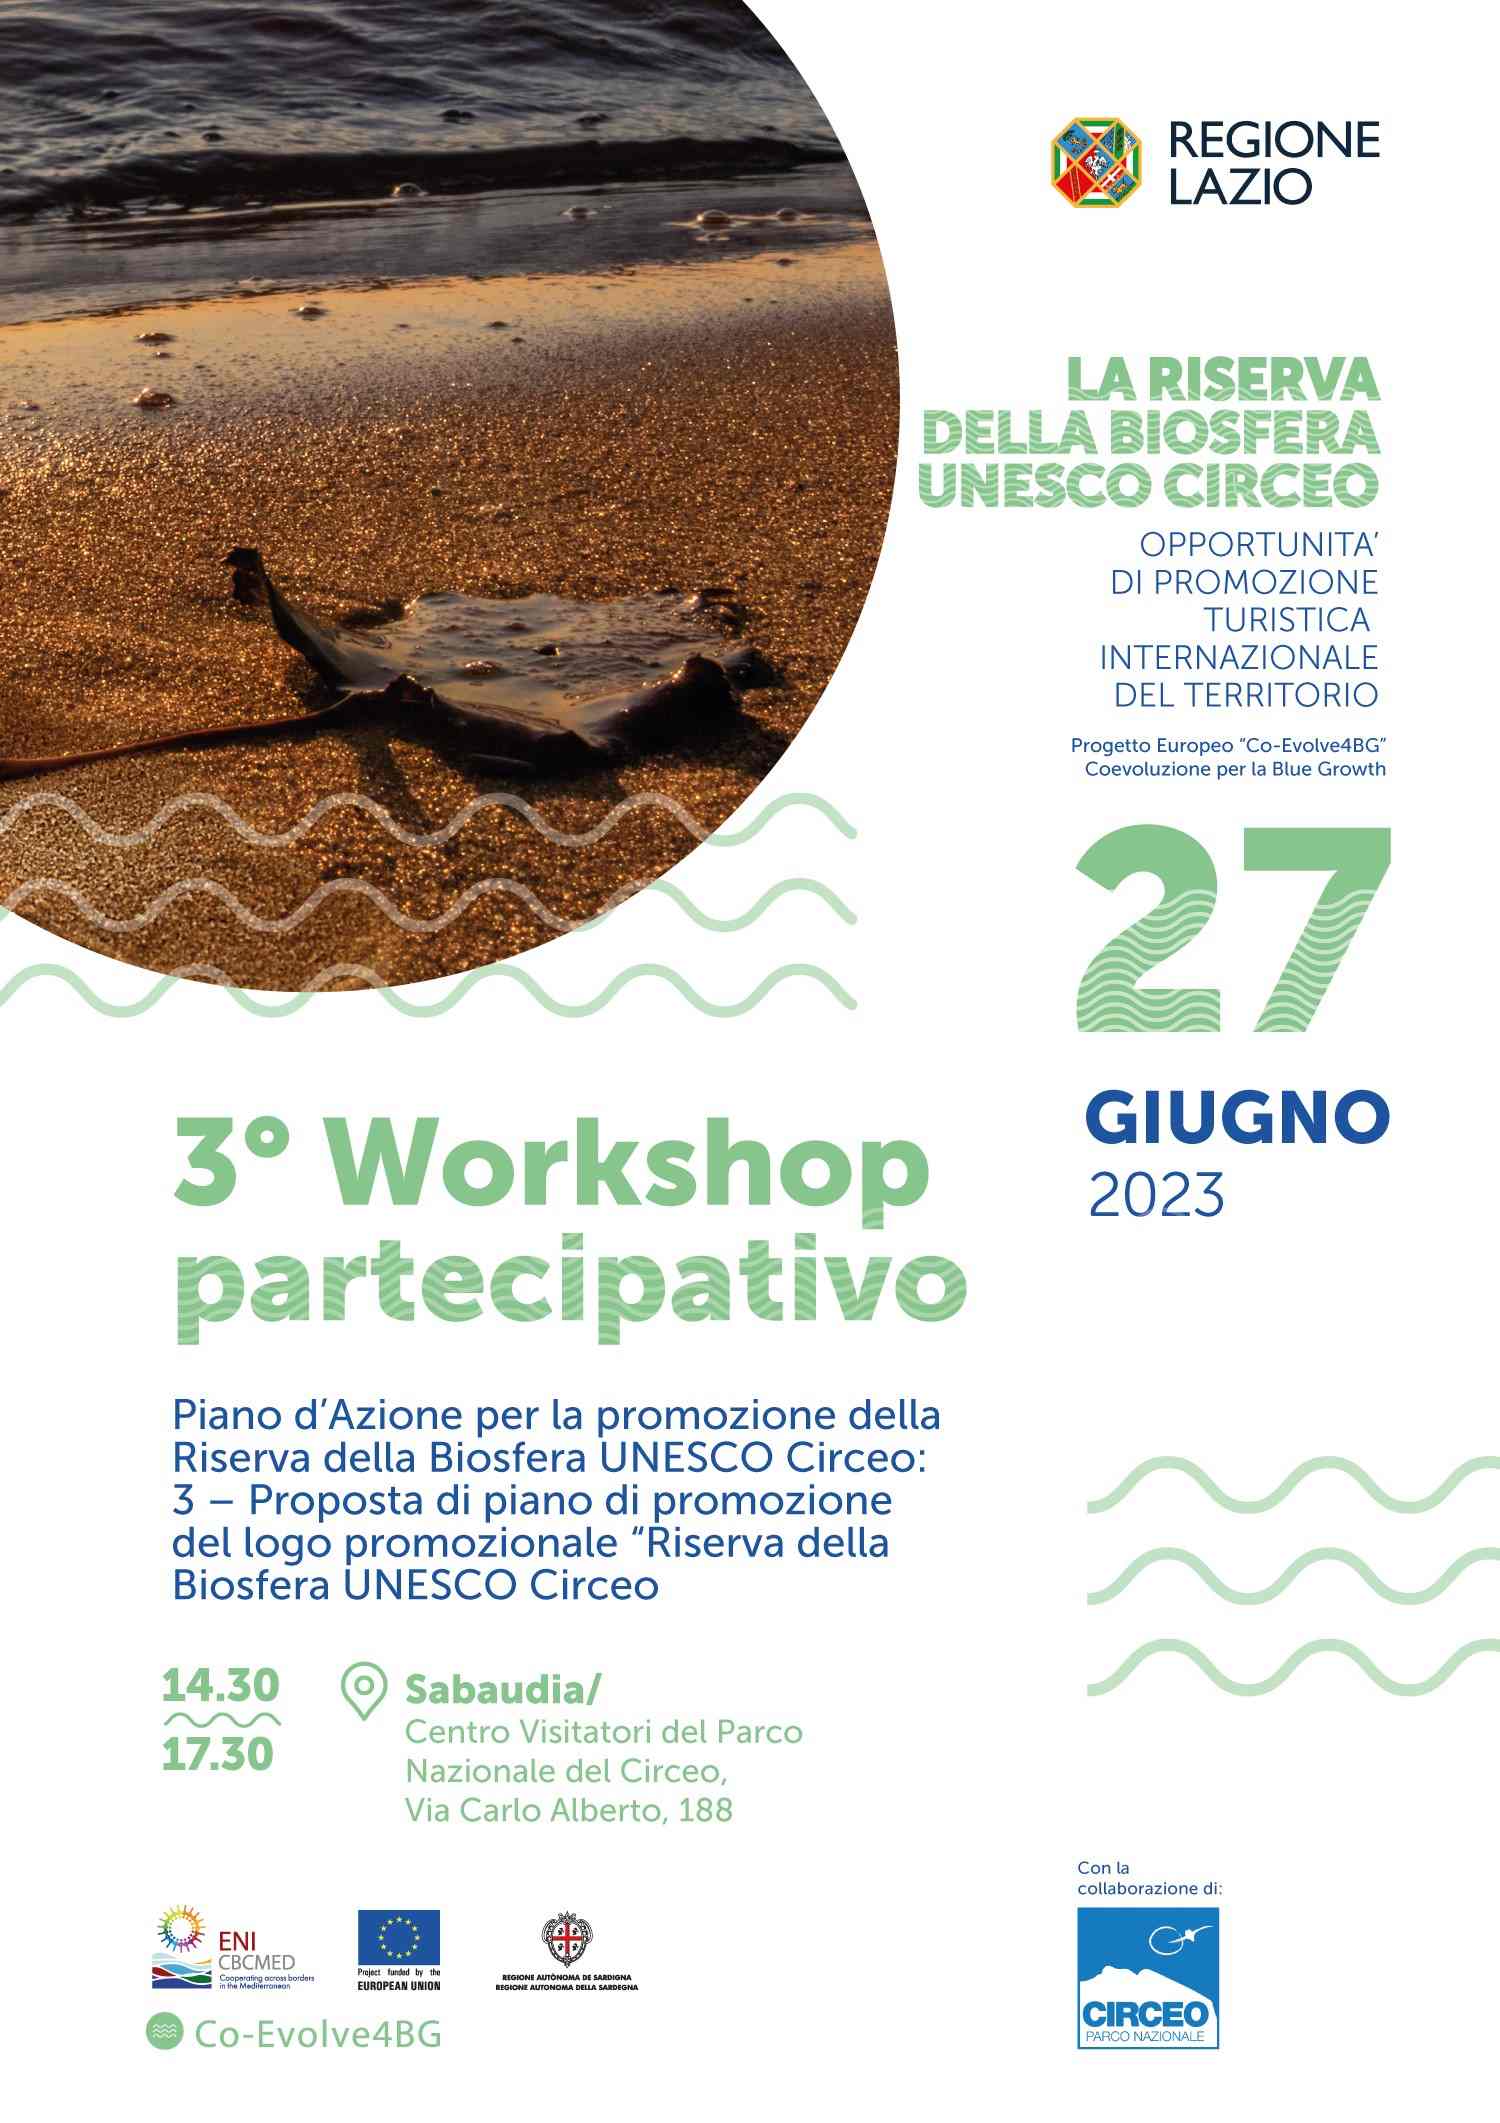 3° Workshop partecipativo “Piano d’Azione per la promozione della Riserva della Biosfera UNESCO Circeo